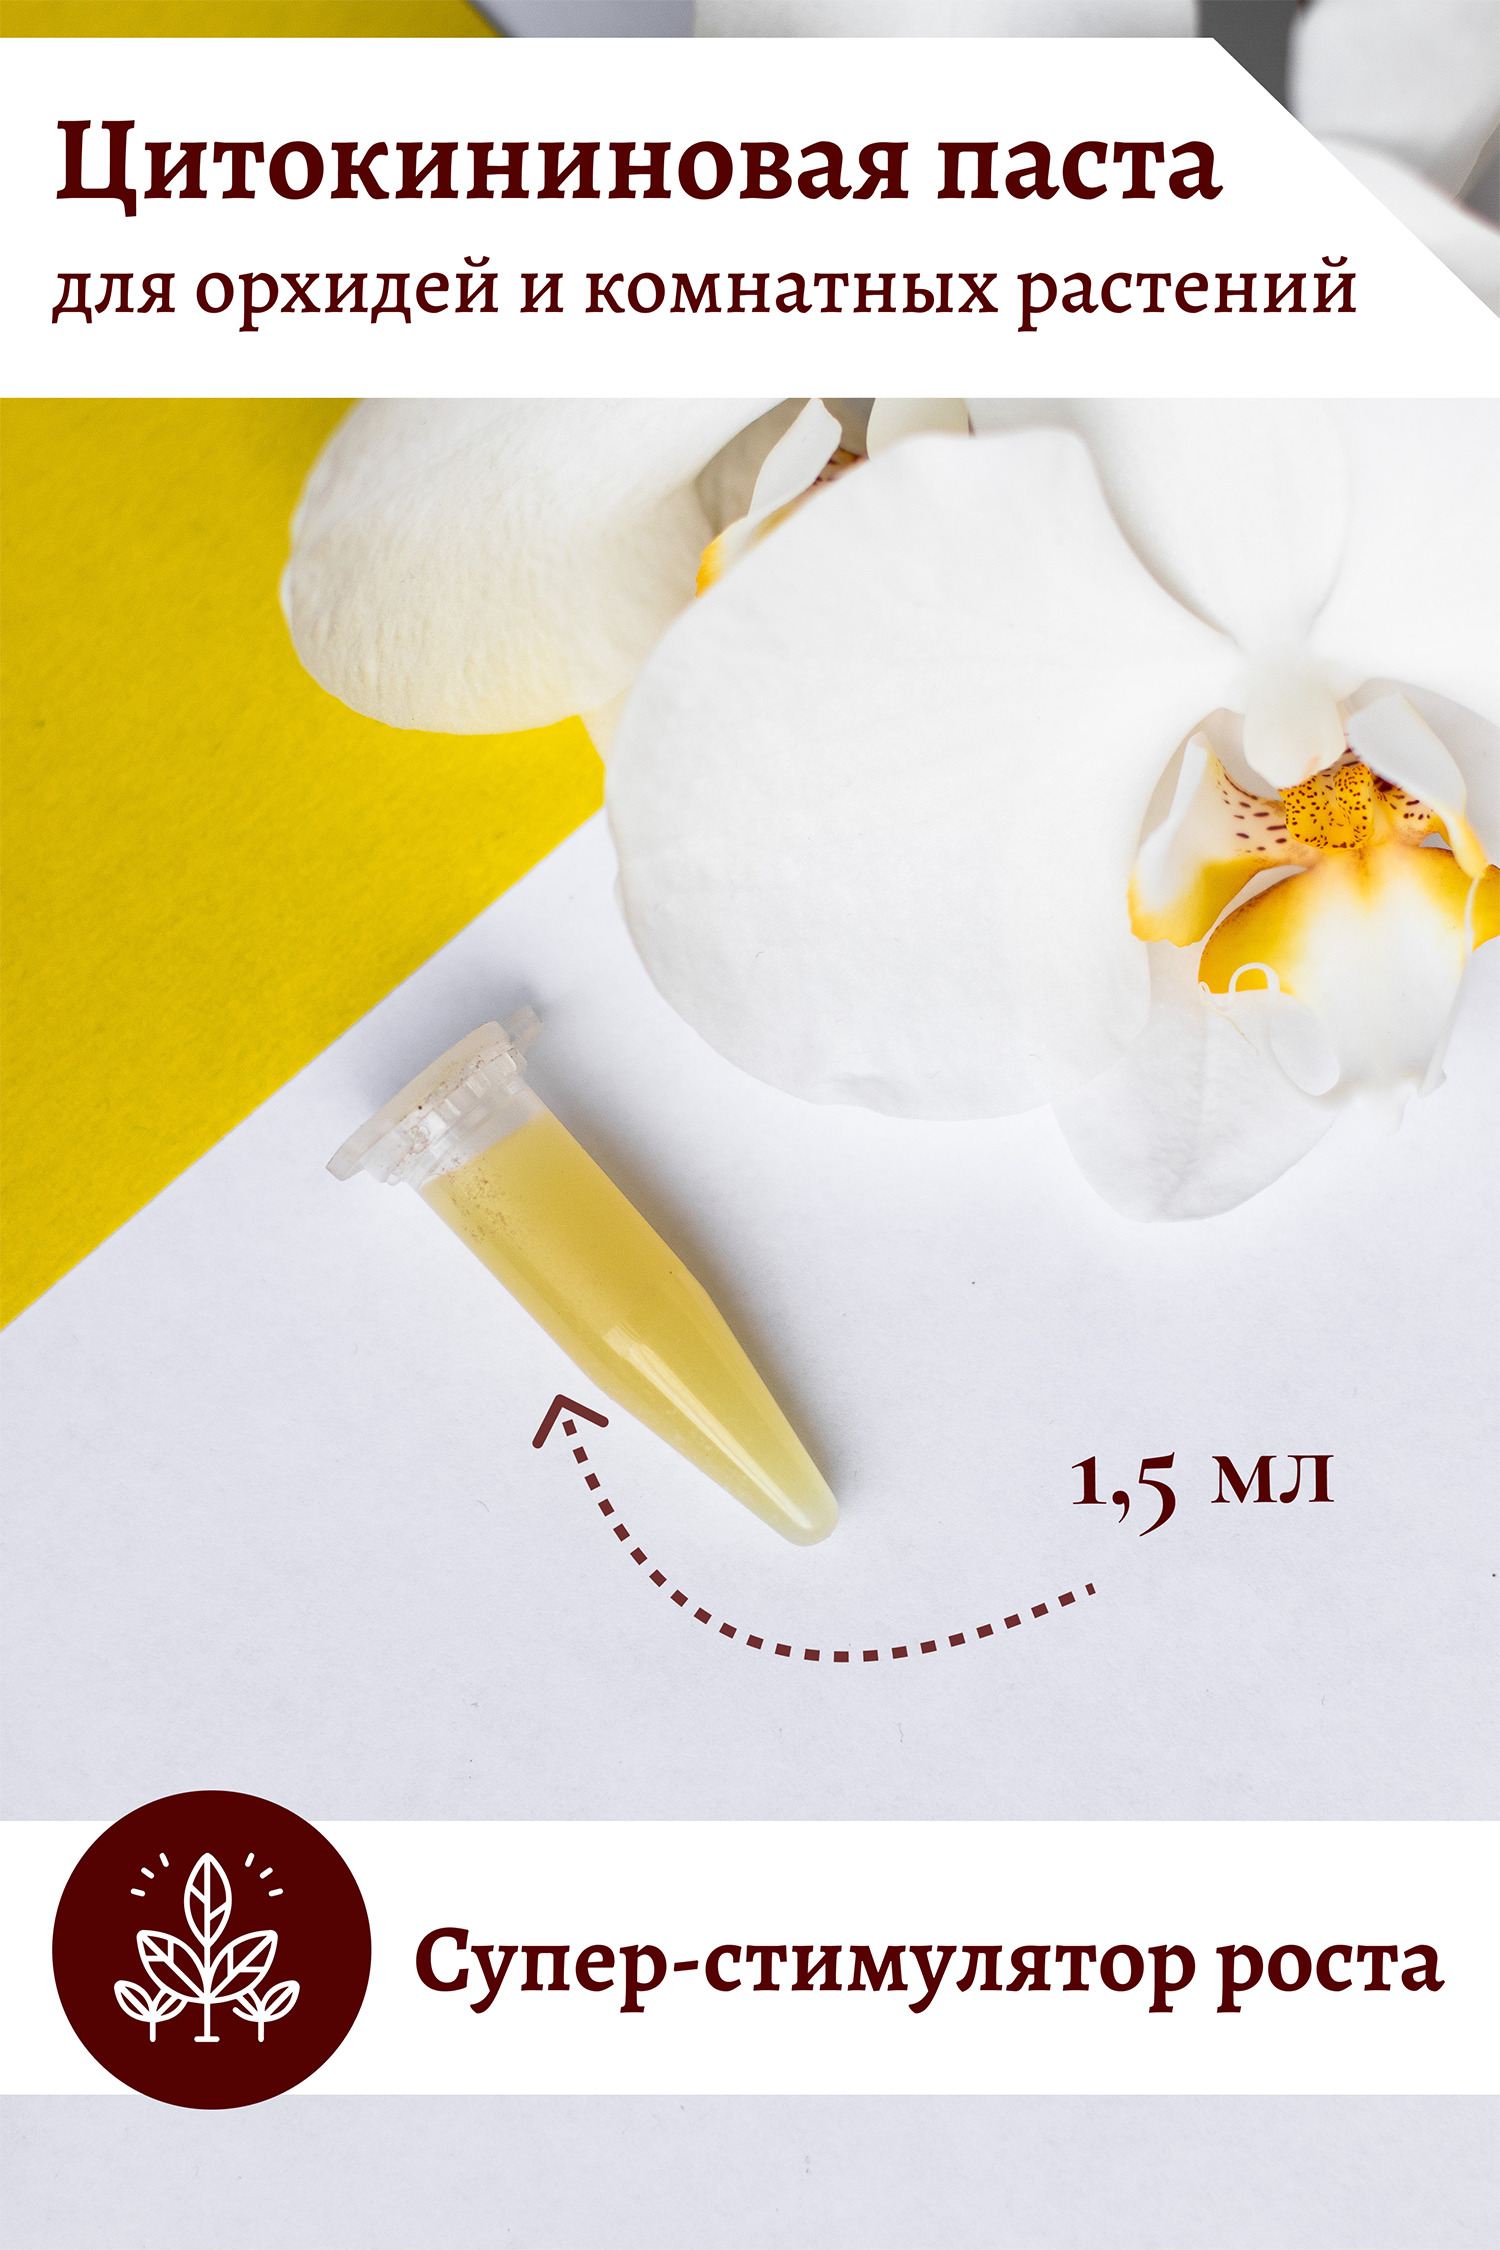 Цитокининовая паста для растений. Паста цитокининовая EFFECTBIO 1,5мл. Цитокининовая паста для орхидей. Паста для цветов цитокининовая. Паста для орхидей для размножения цитокининовая.